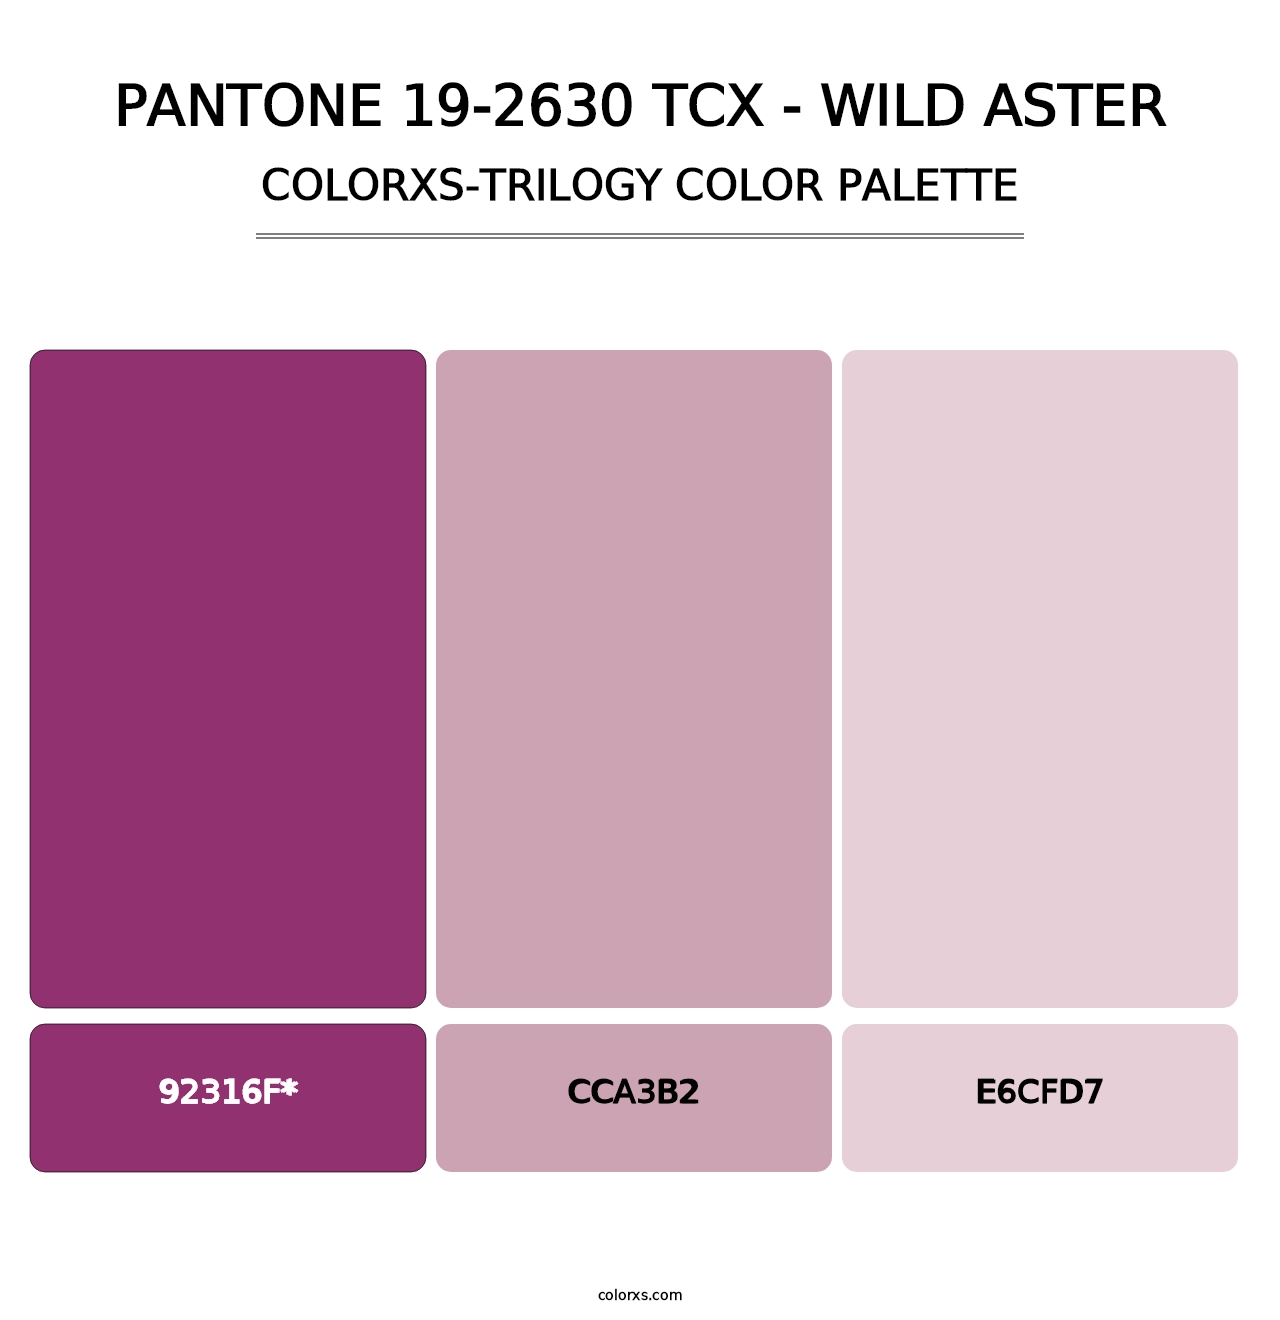 PANTONE 19-2630 TCX - Wild Aster - Colorxs Trilogy Palette